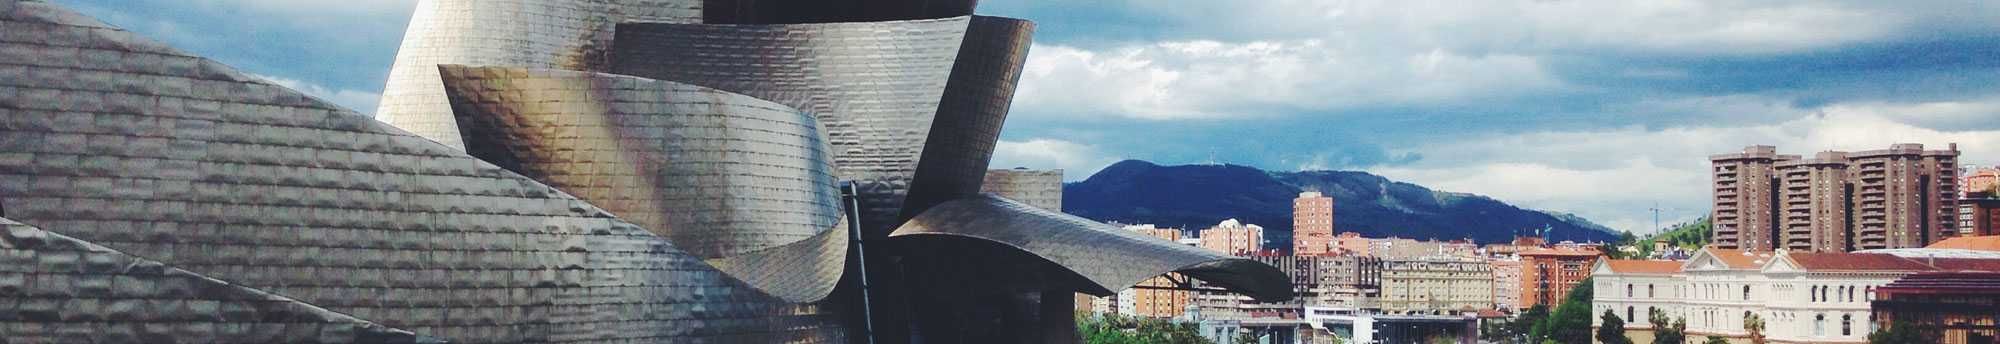 Museu Guggenheim Bilbau